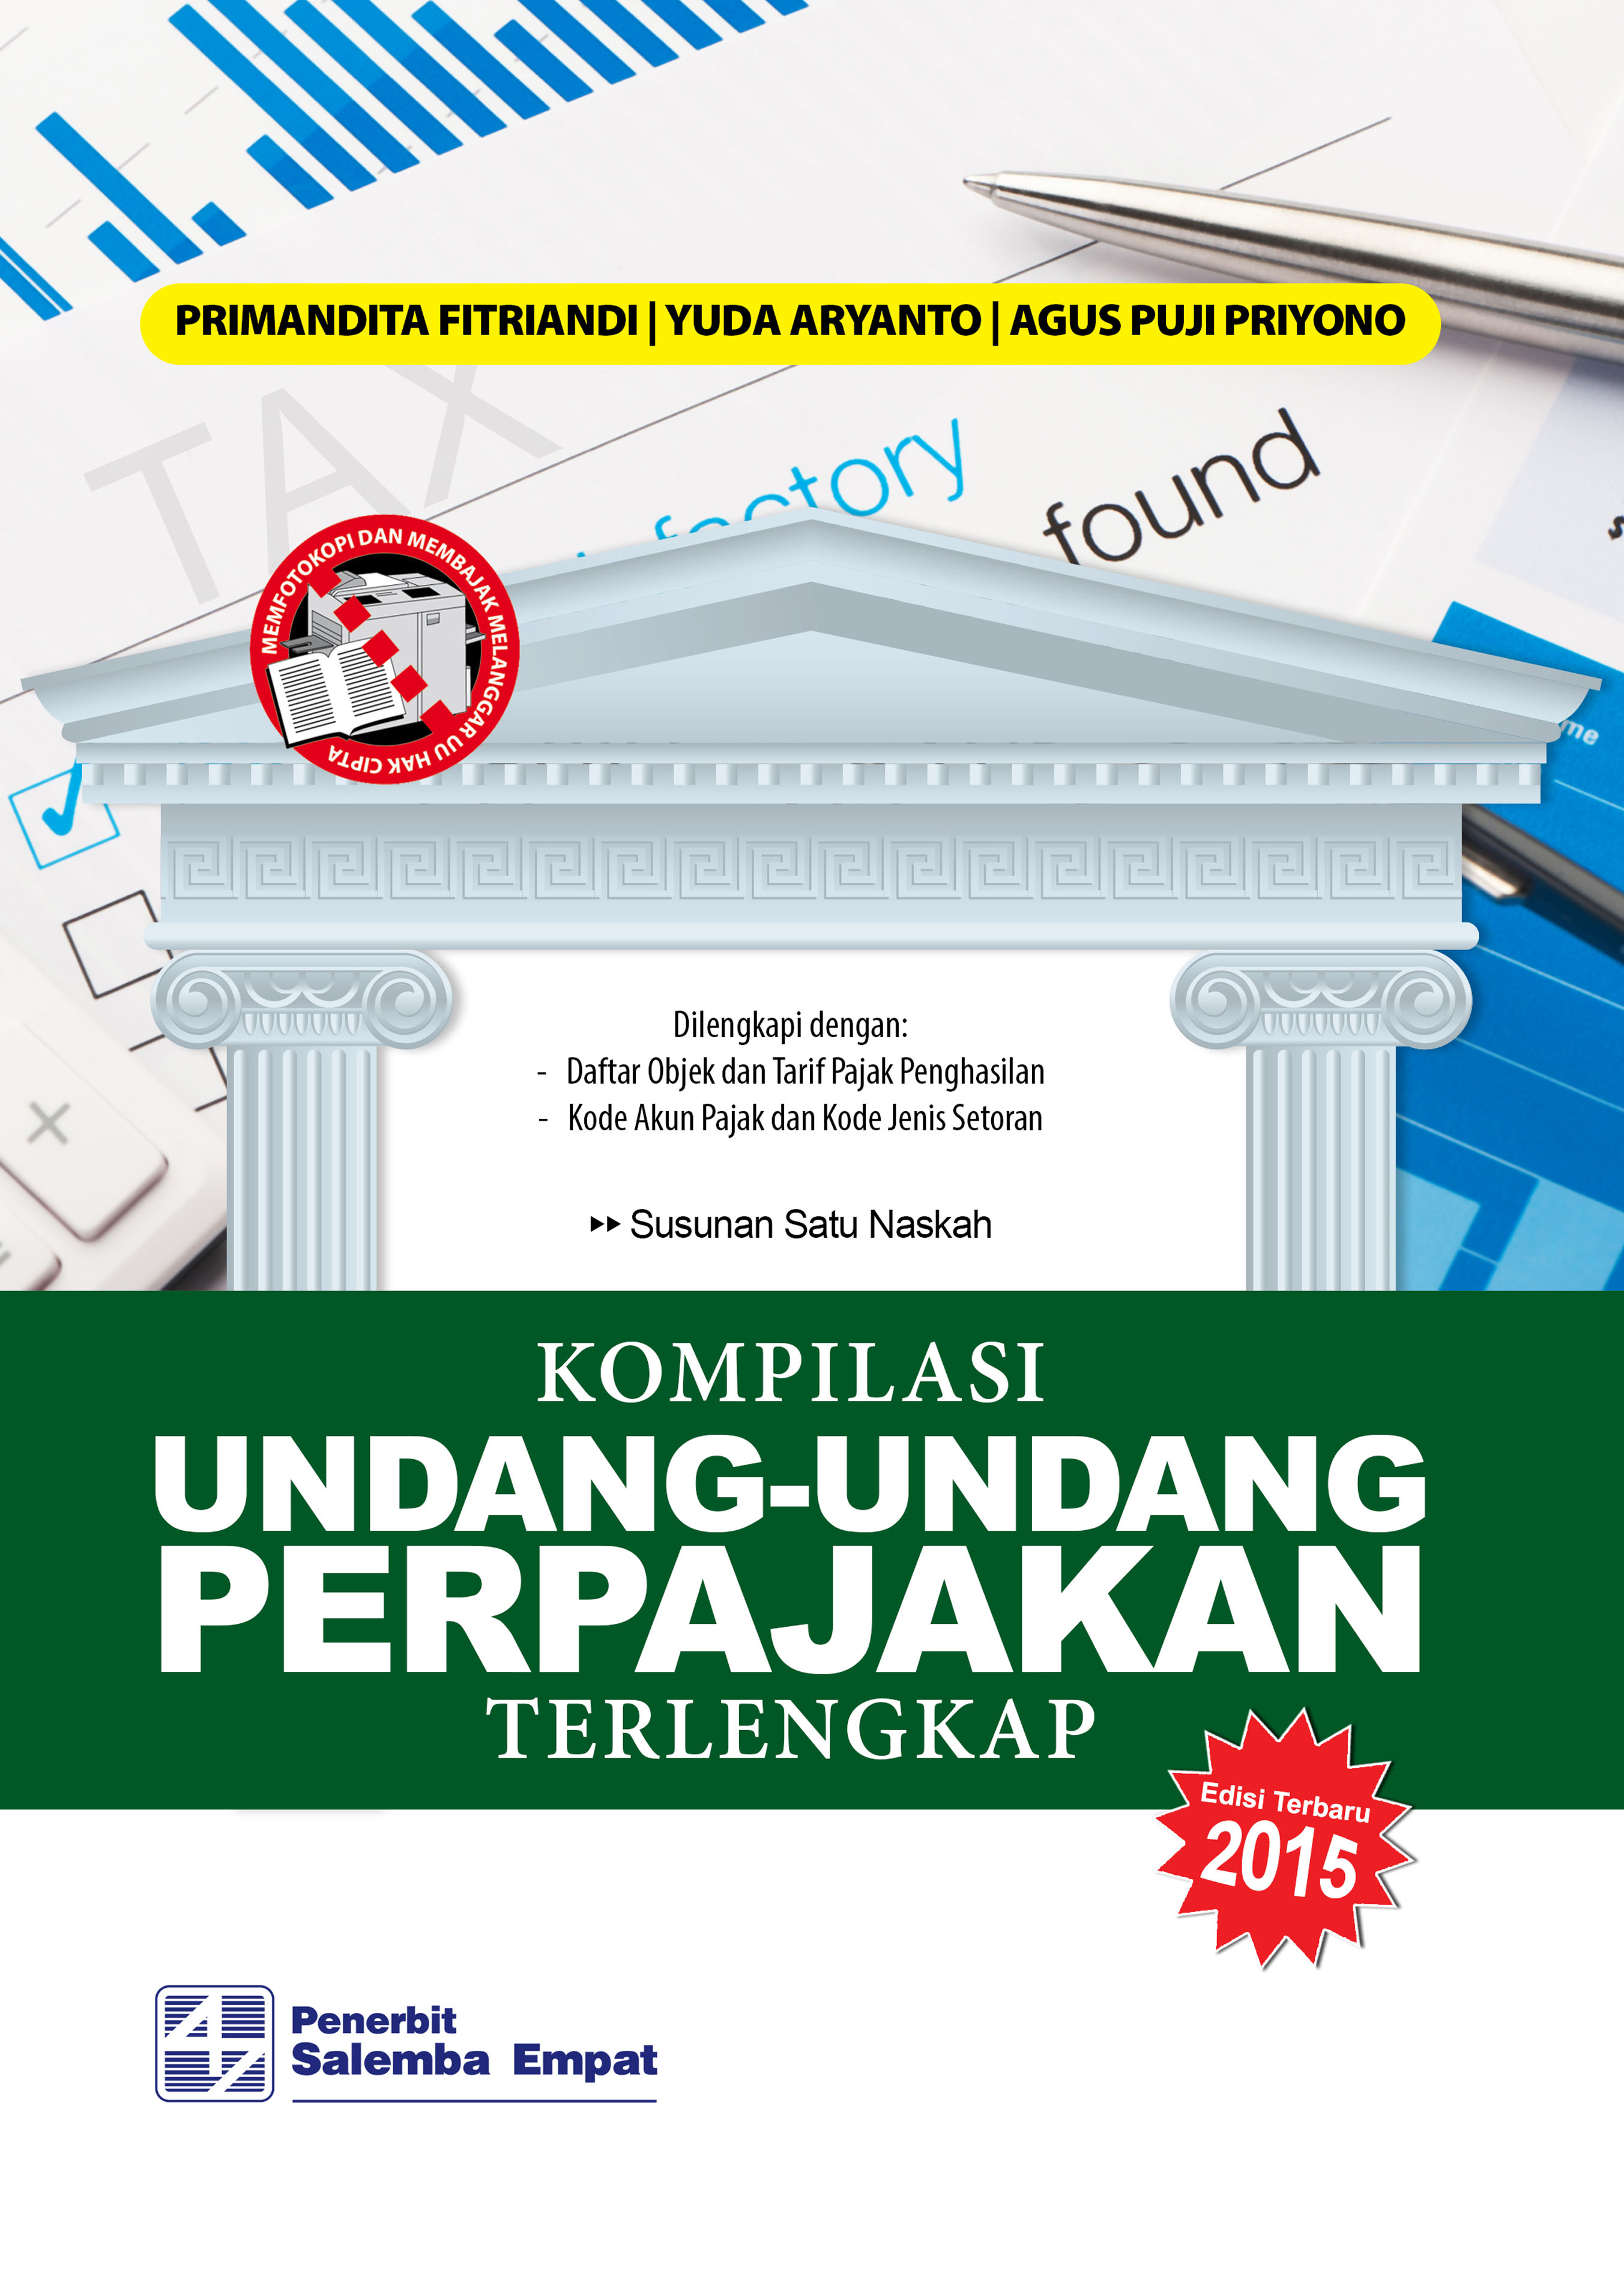 eBook Kompilasi Undang-Undang Perpajakan Terlengkap 2015 (Primandita F., Yuda Aryanto, Agus Puji P.)